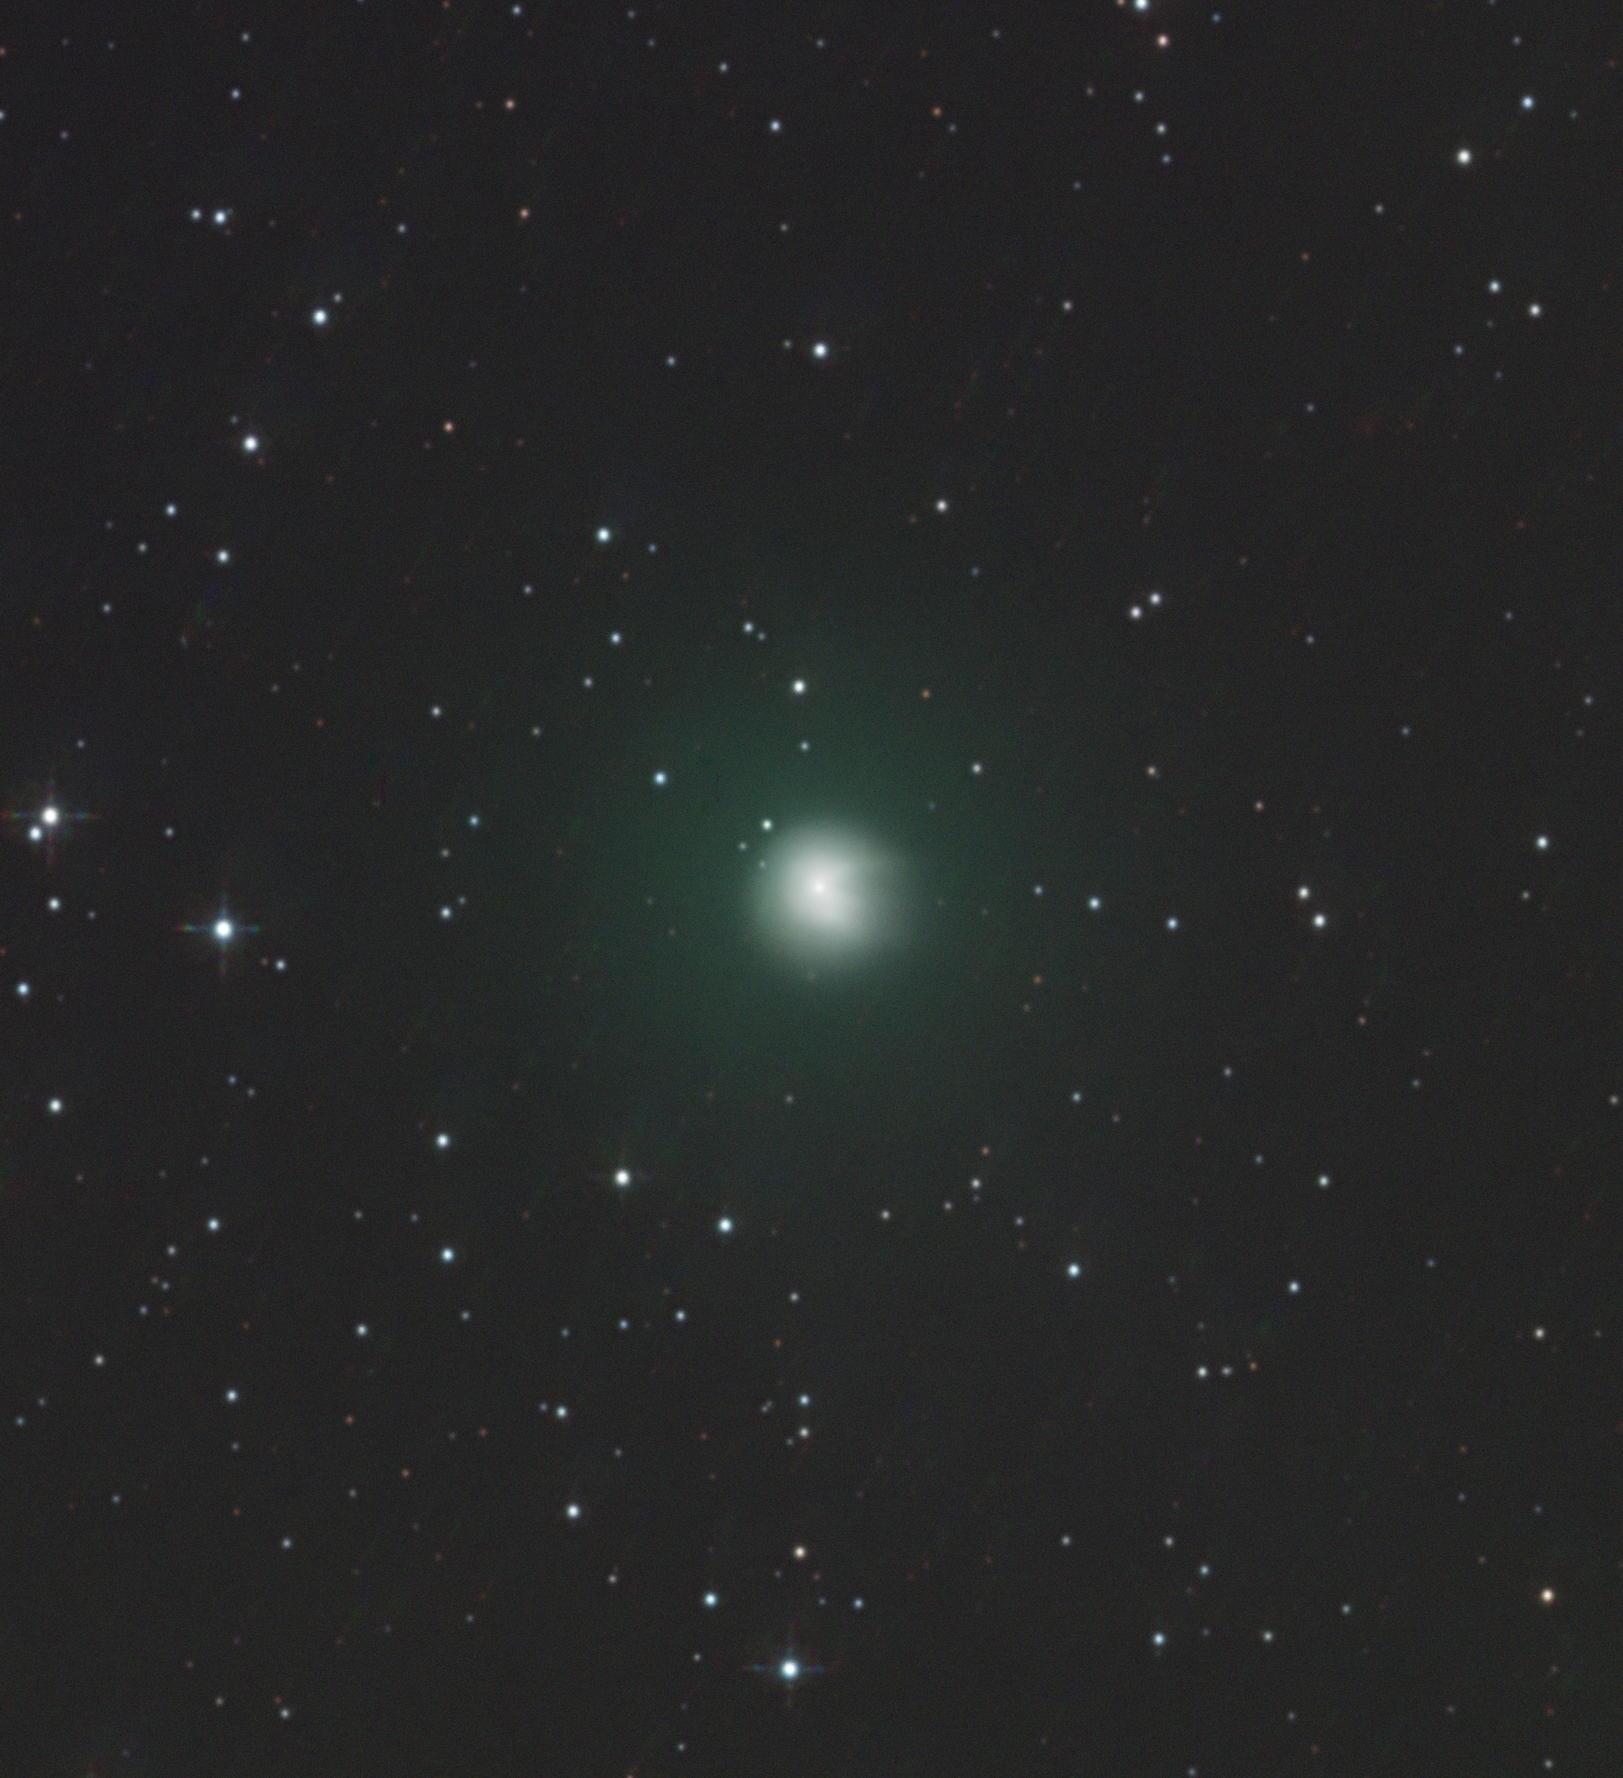 Комета понса брукса можно увидеть в москве